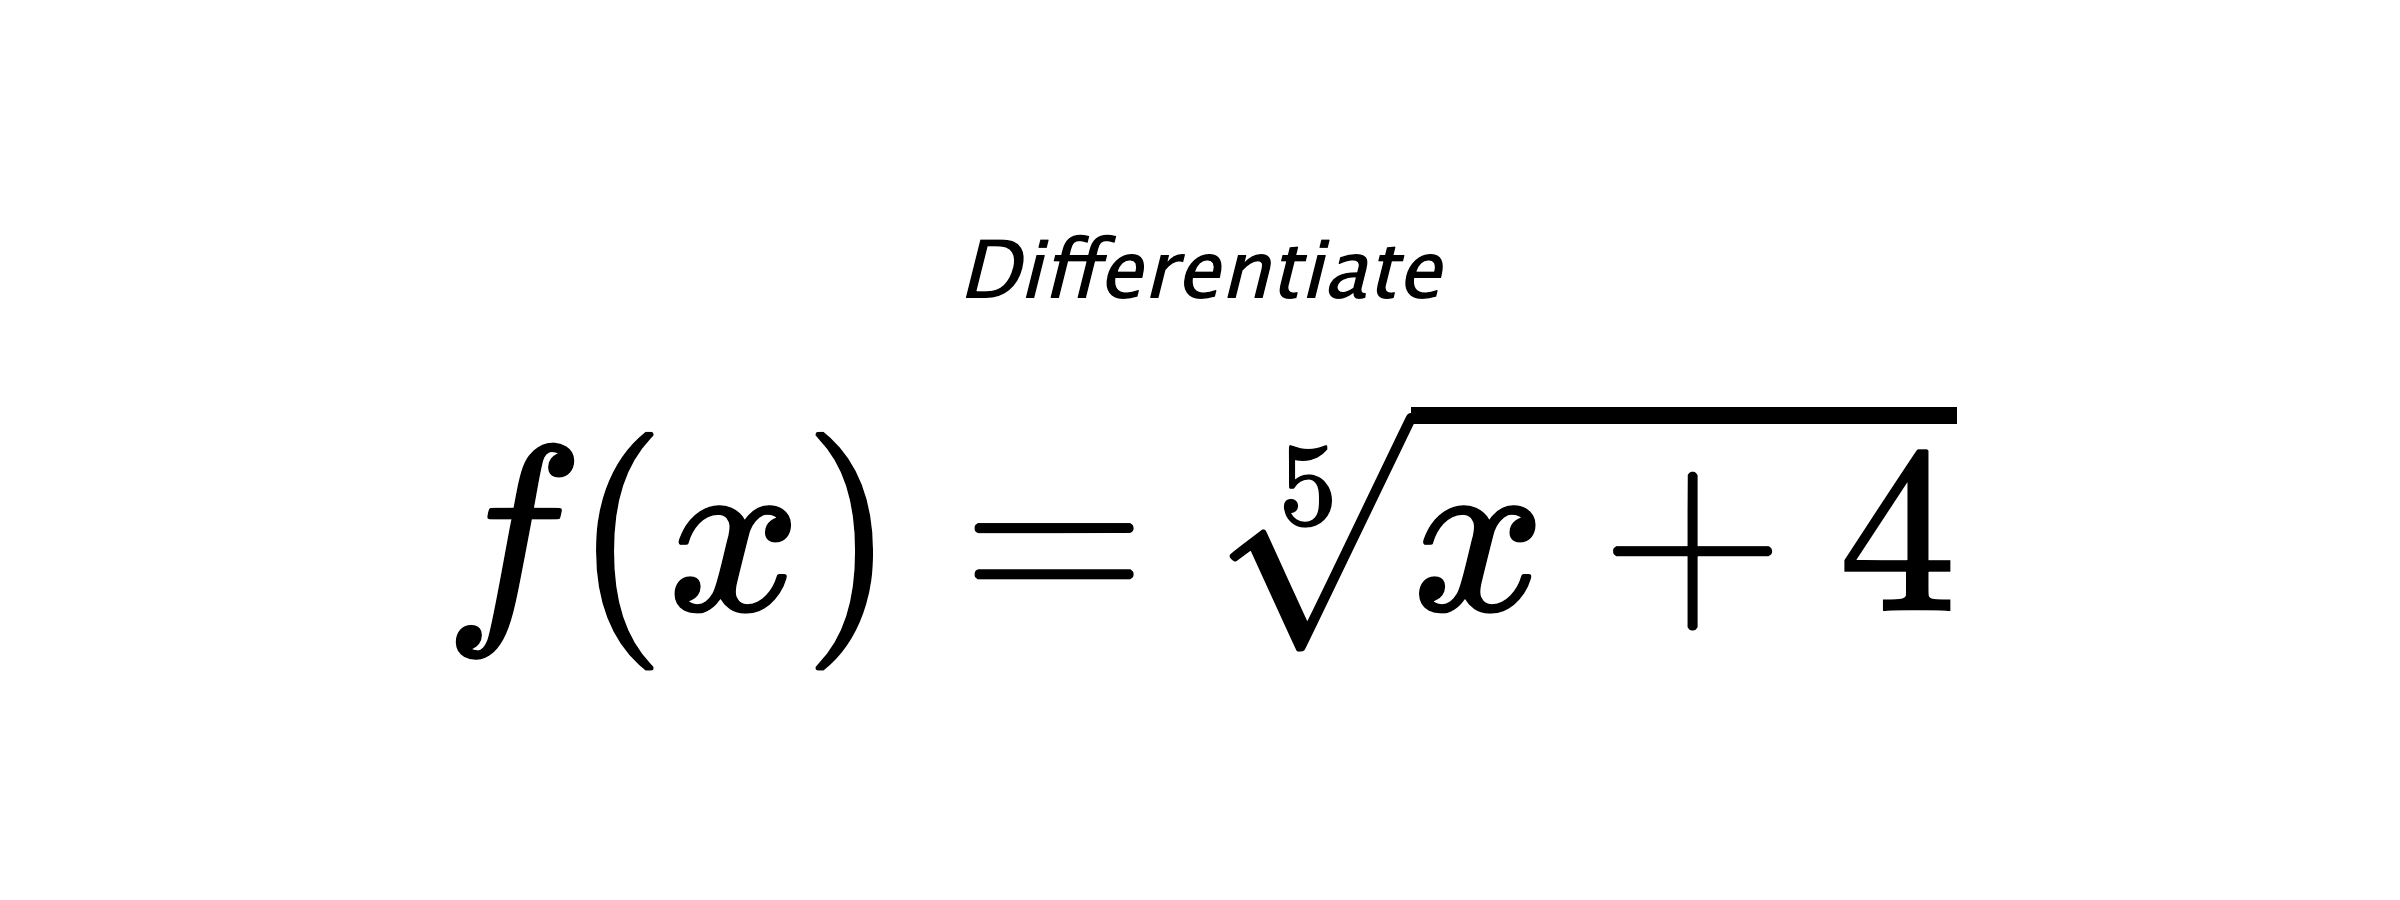 Differentiate $ f(x) = \sqrt[5]{x + 4} $